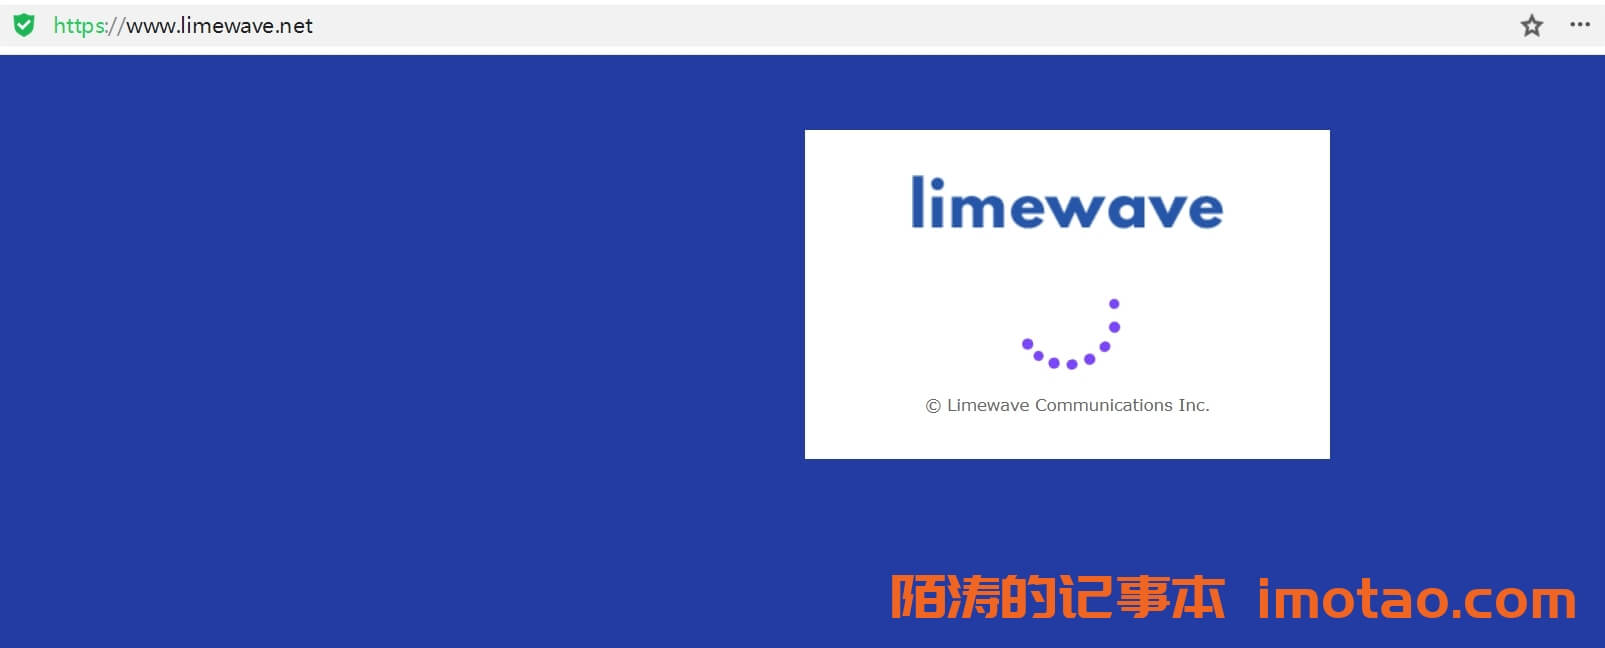 #消息# Limewave正式宣告跑路，有可能的话尽快备份数据